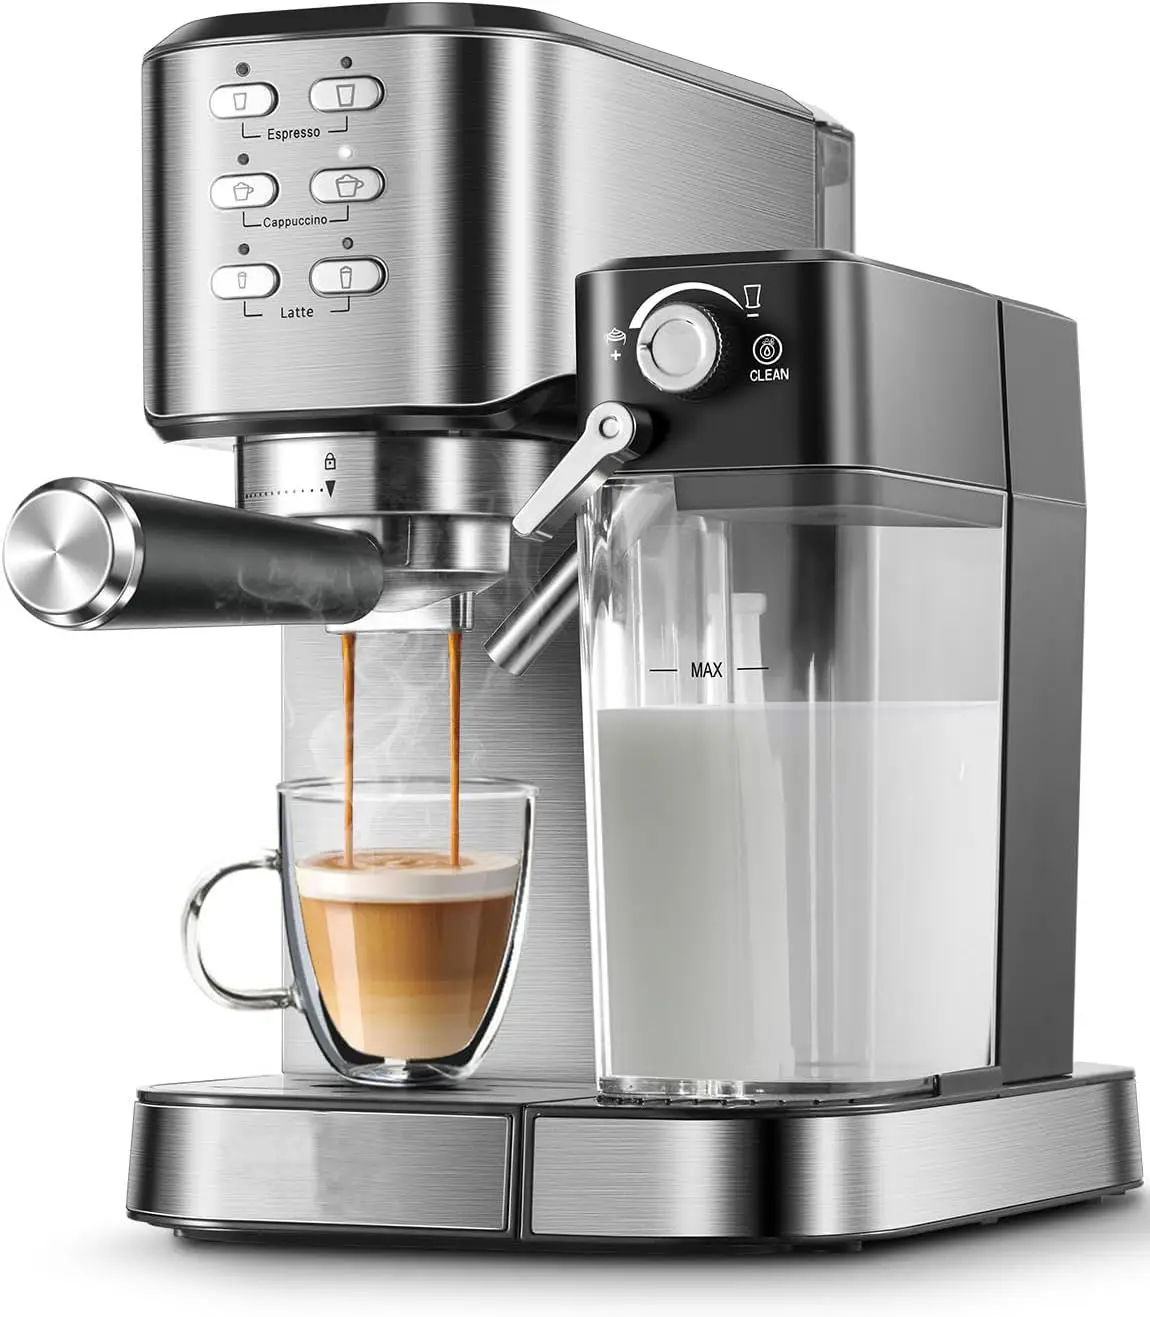 Máquina de café Espresso 6 en 1, Espumador de leche automático incorporado, cafetera Espresso, capuchino y Latte con tanque de agua extraíble